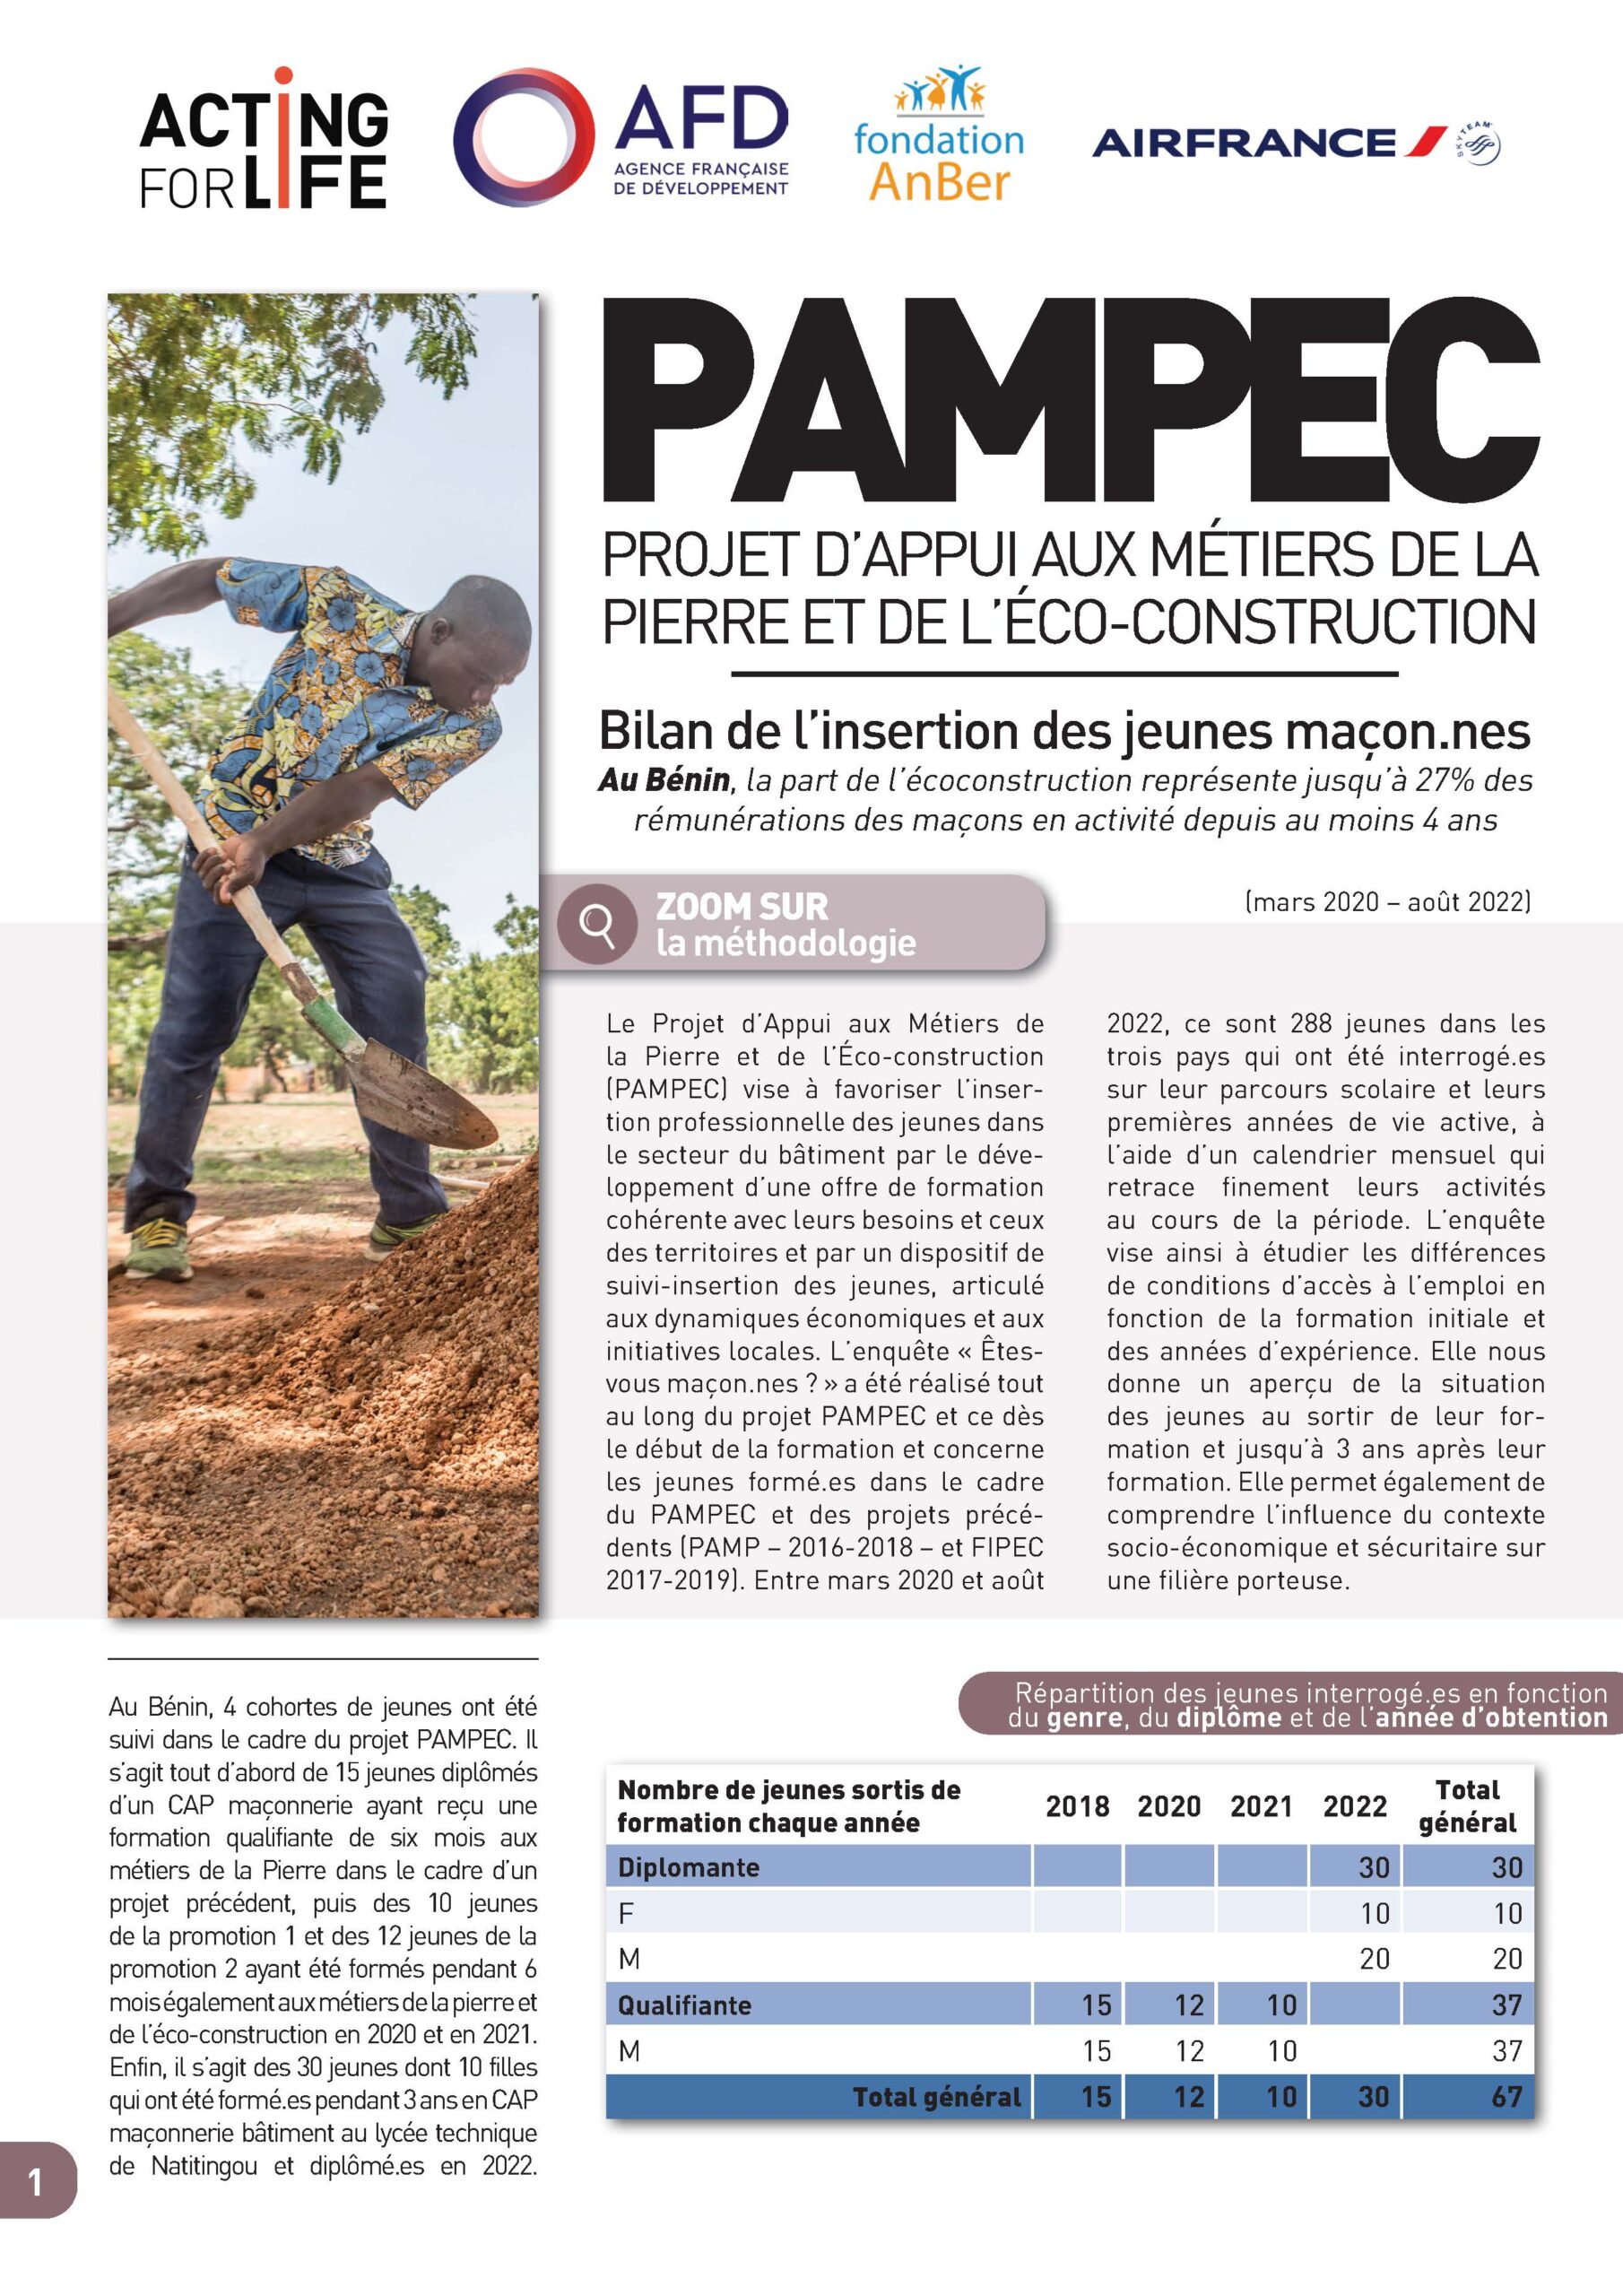 Insertion professionnelle des jeunes PAMPEC au Bénin